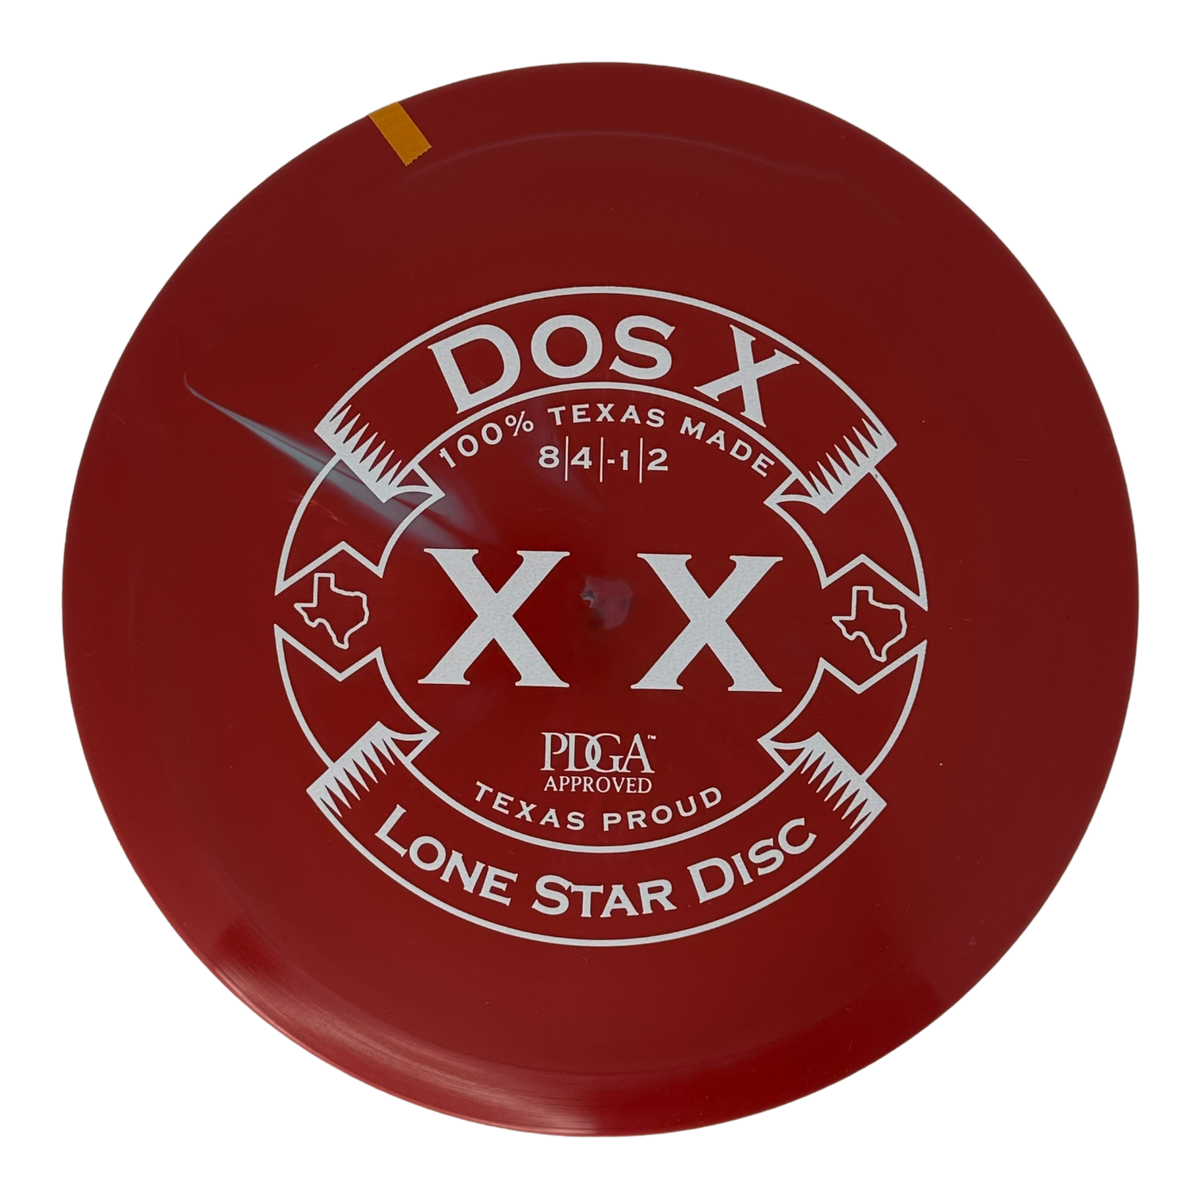 Lone Star Disc Bravo Dos X - Double X